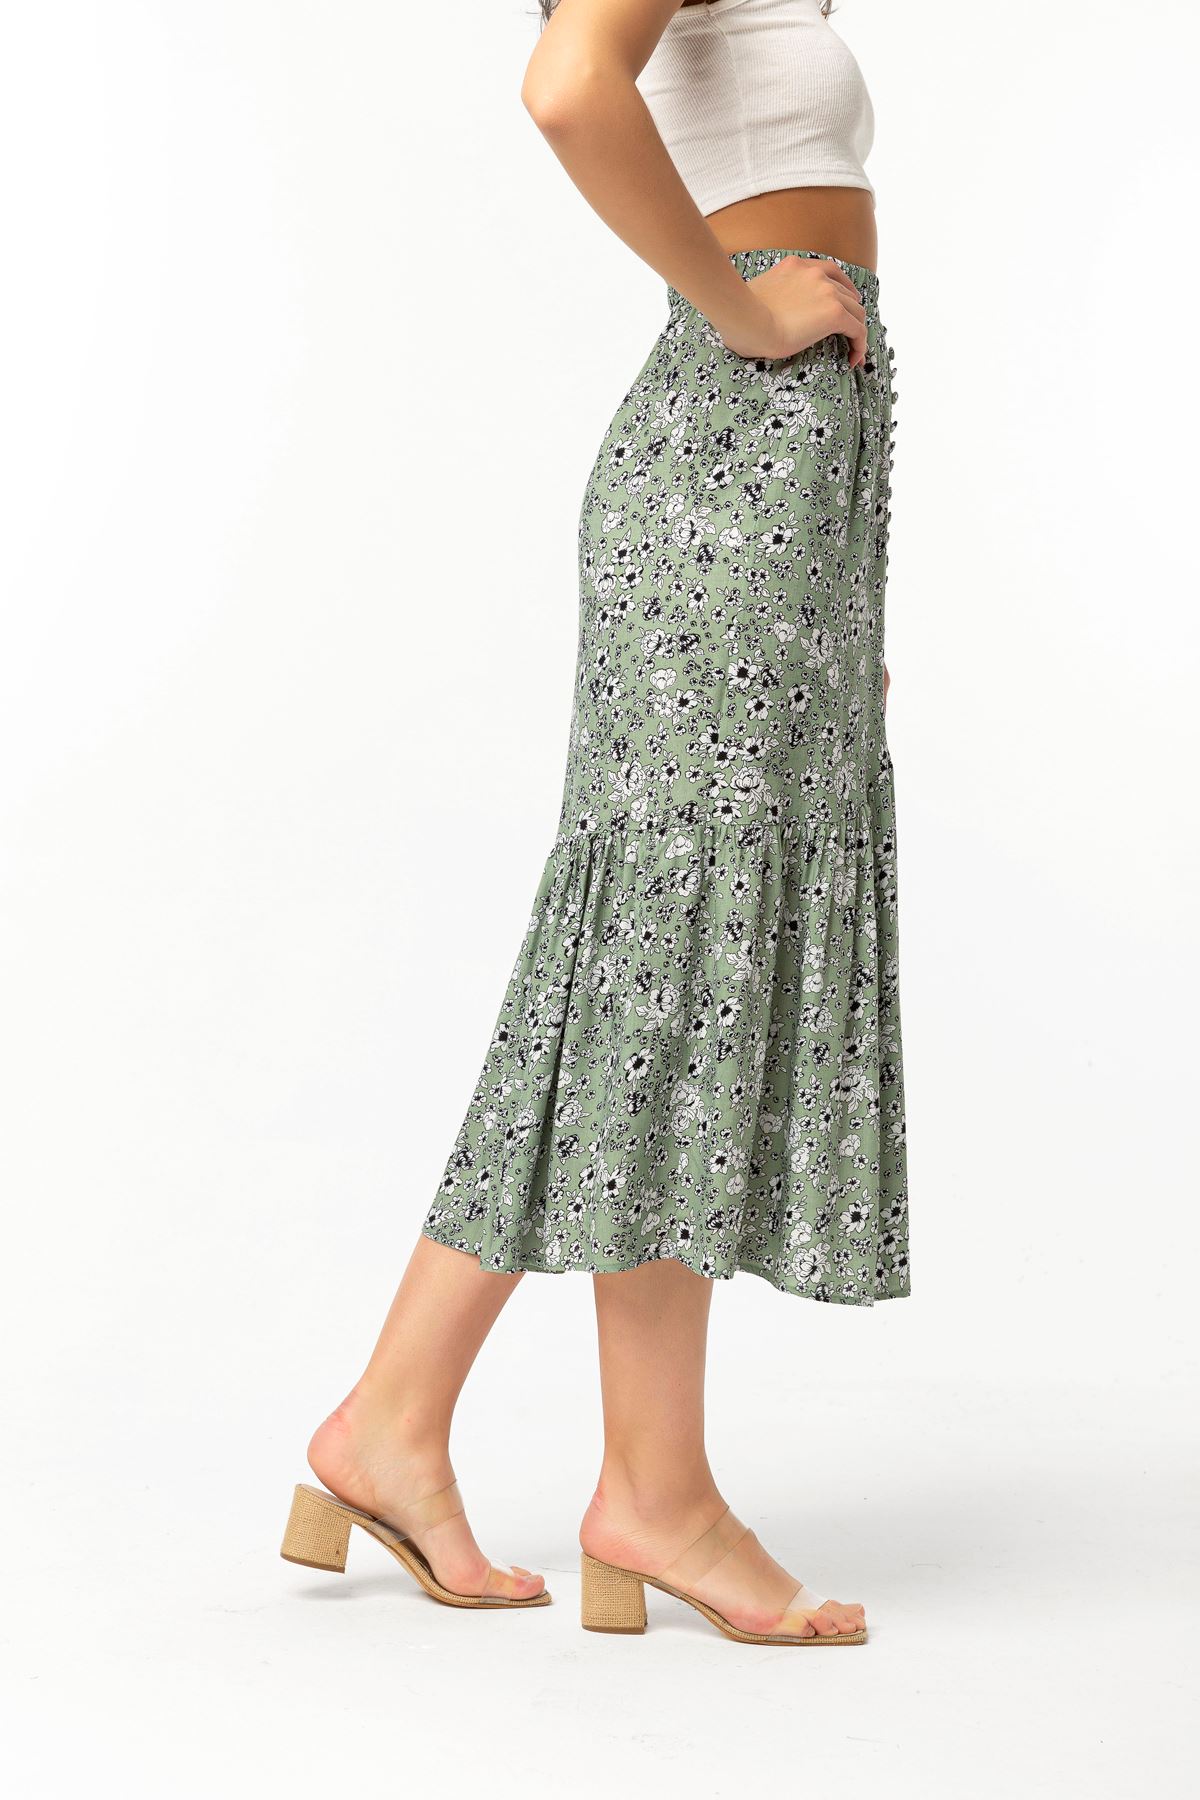 تنورة نسائية قماش فيسكون طويل قالب مريح نمط زهرة - اخضر فاتح